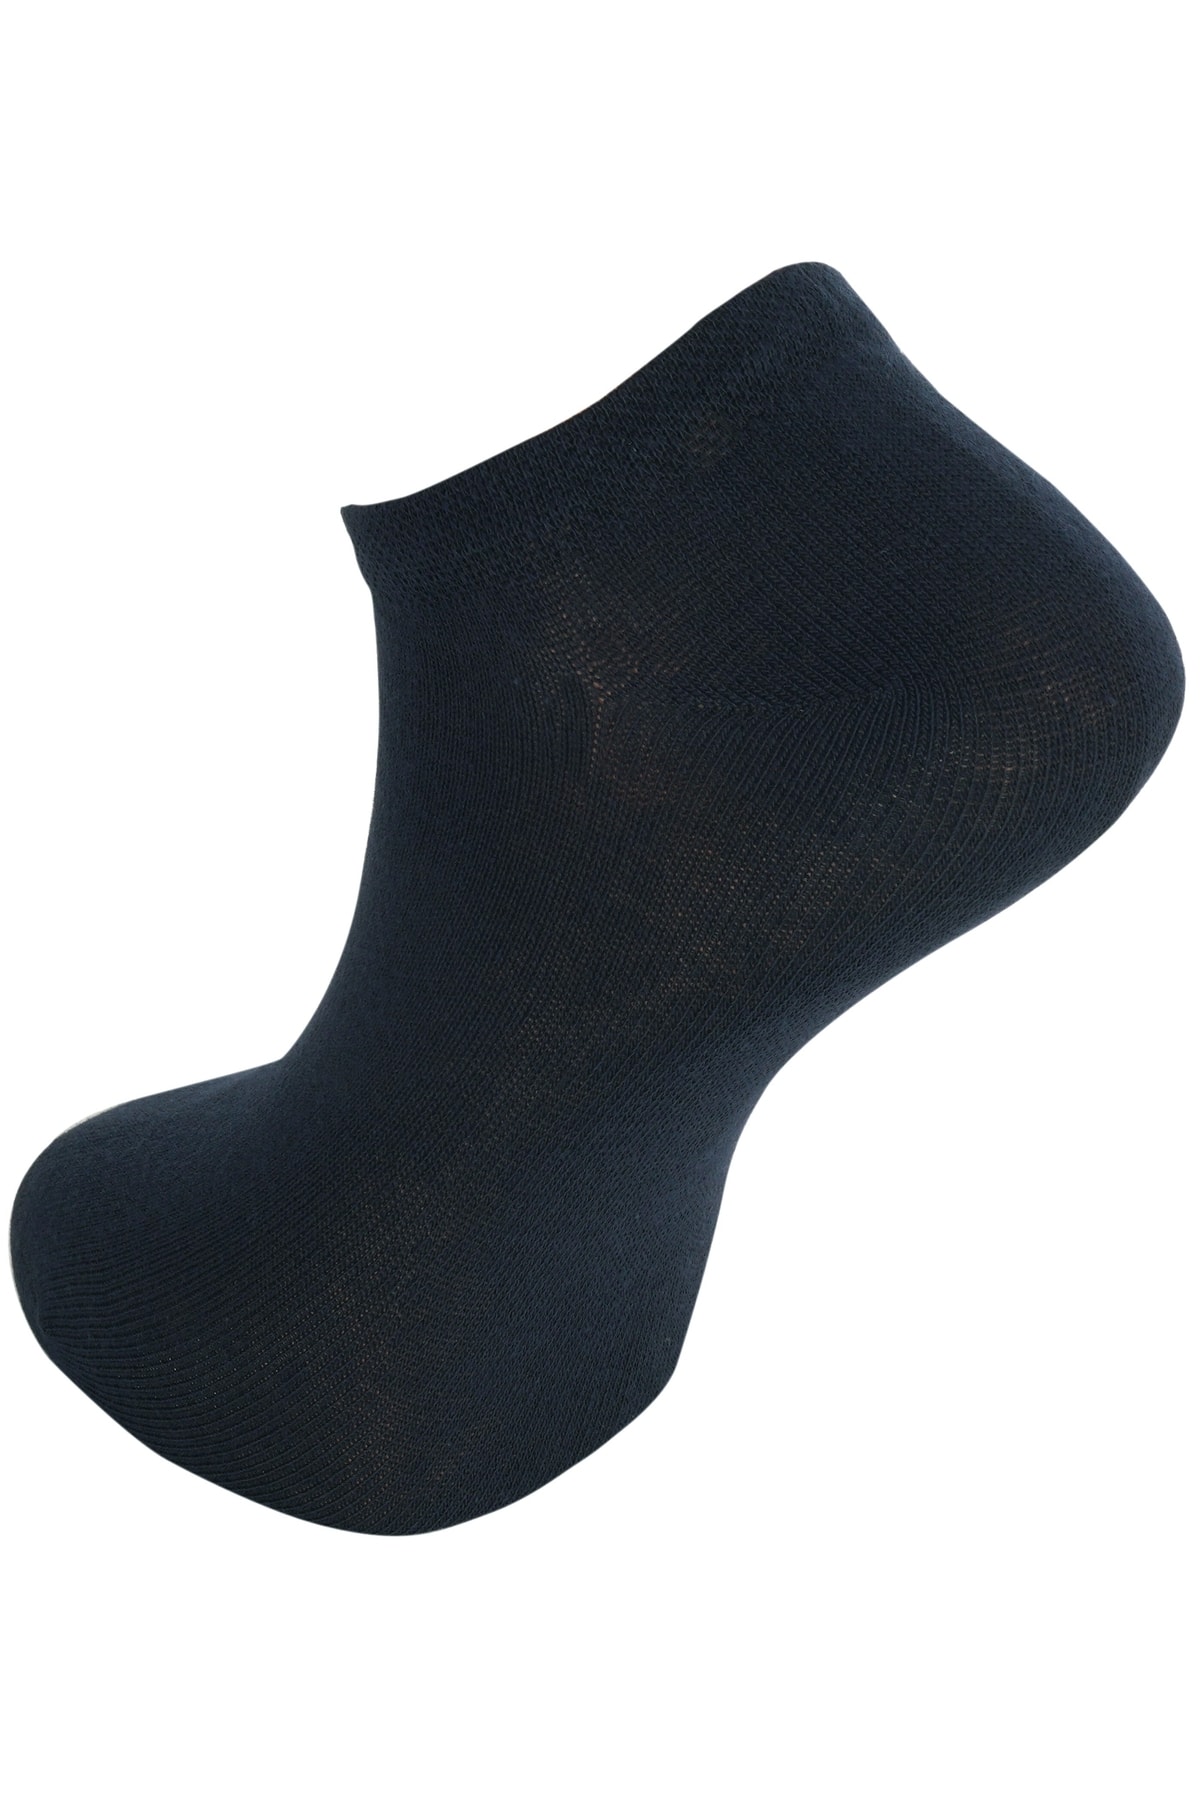 Keremden 8 Çift Unisex Dikişsiz Pamuklu 4 Mevsim Günlük Kullanıma Uygun Patik Çorap Gri Siyah Füme Lacivert IV11475